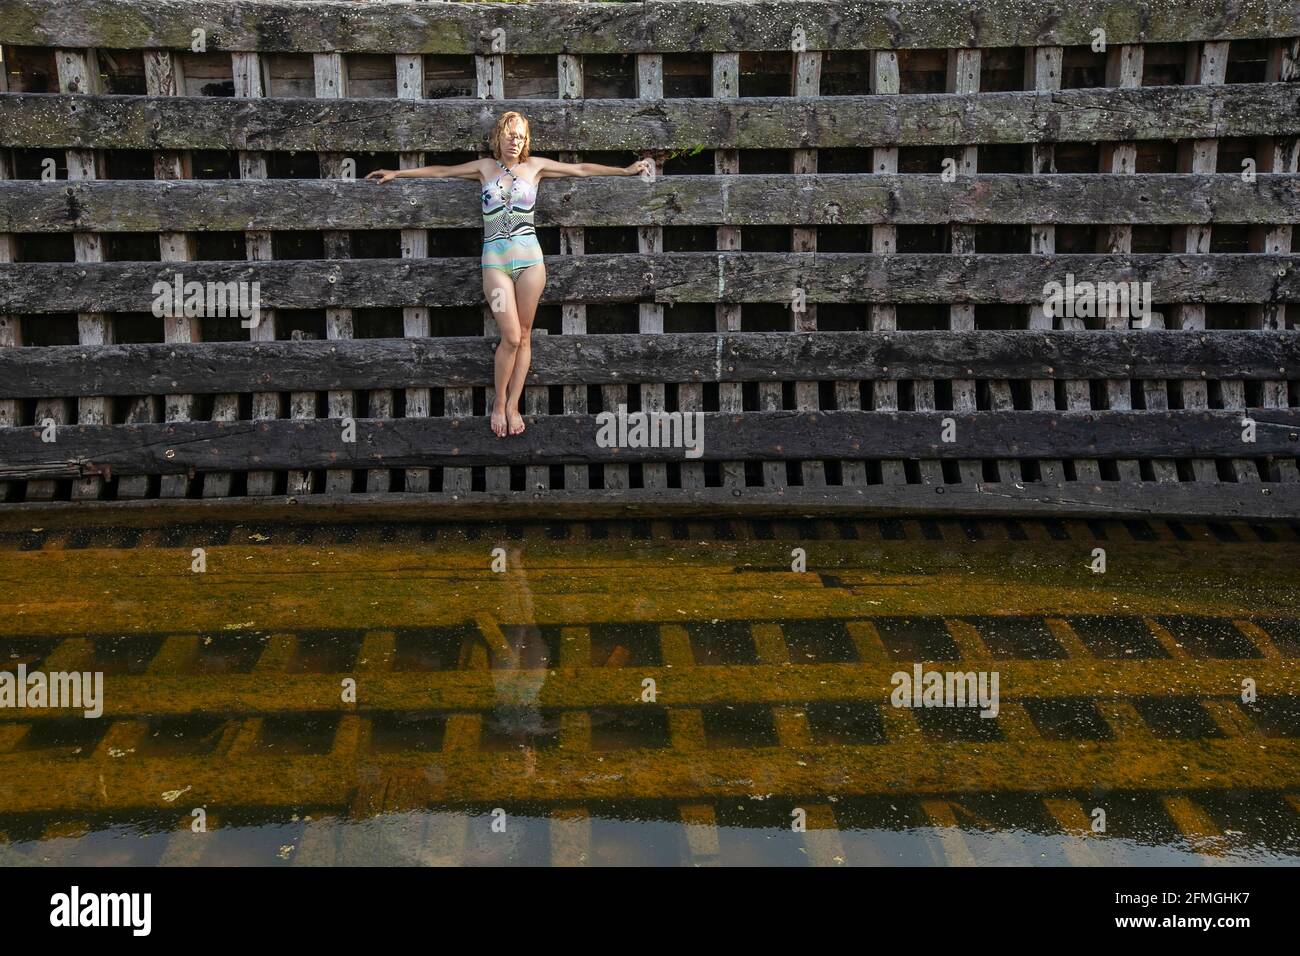 Una giovane donna in costume da bagno si trova a bordo di una barca di legno abbandonata. Foto Stock